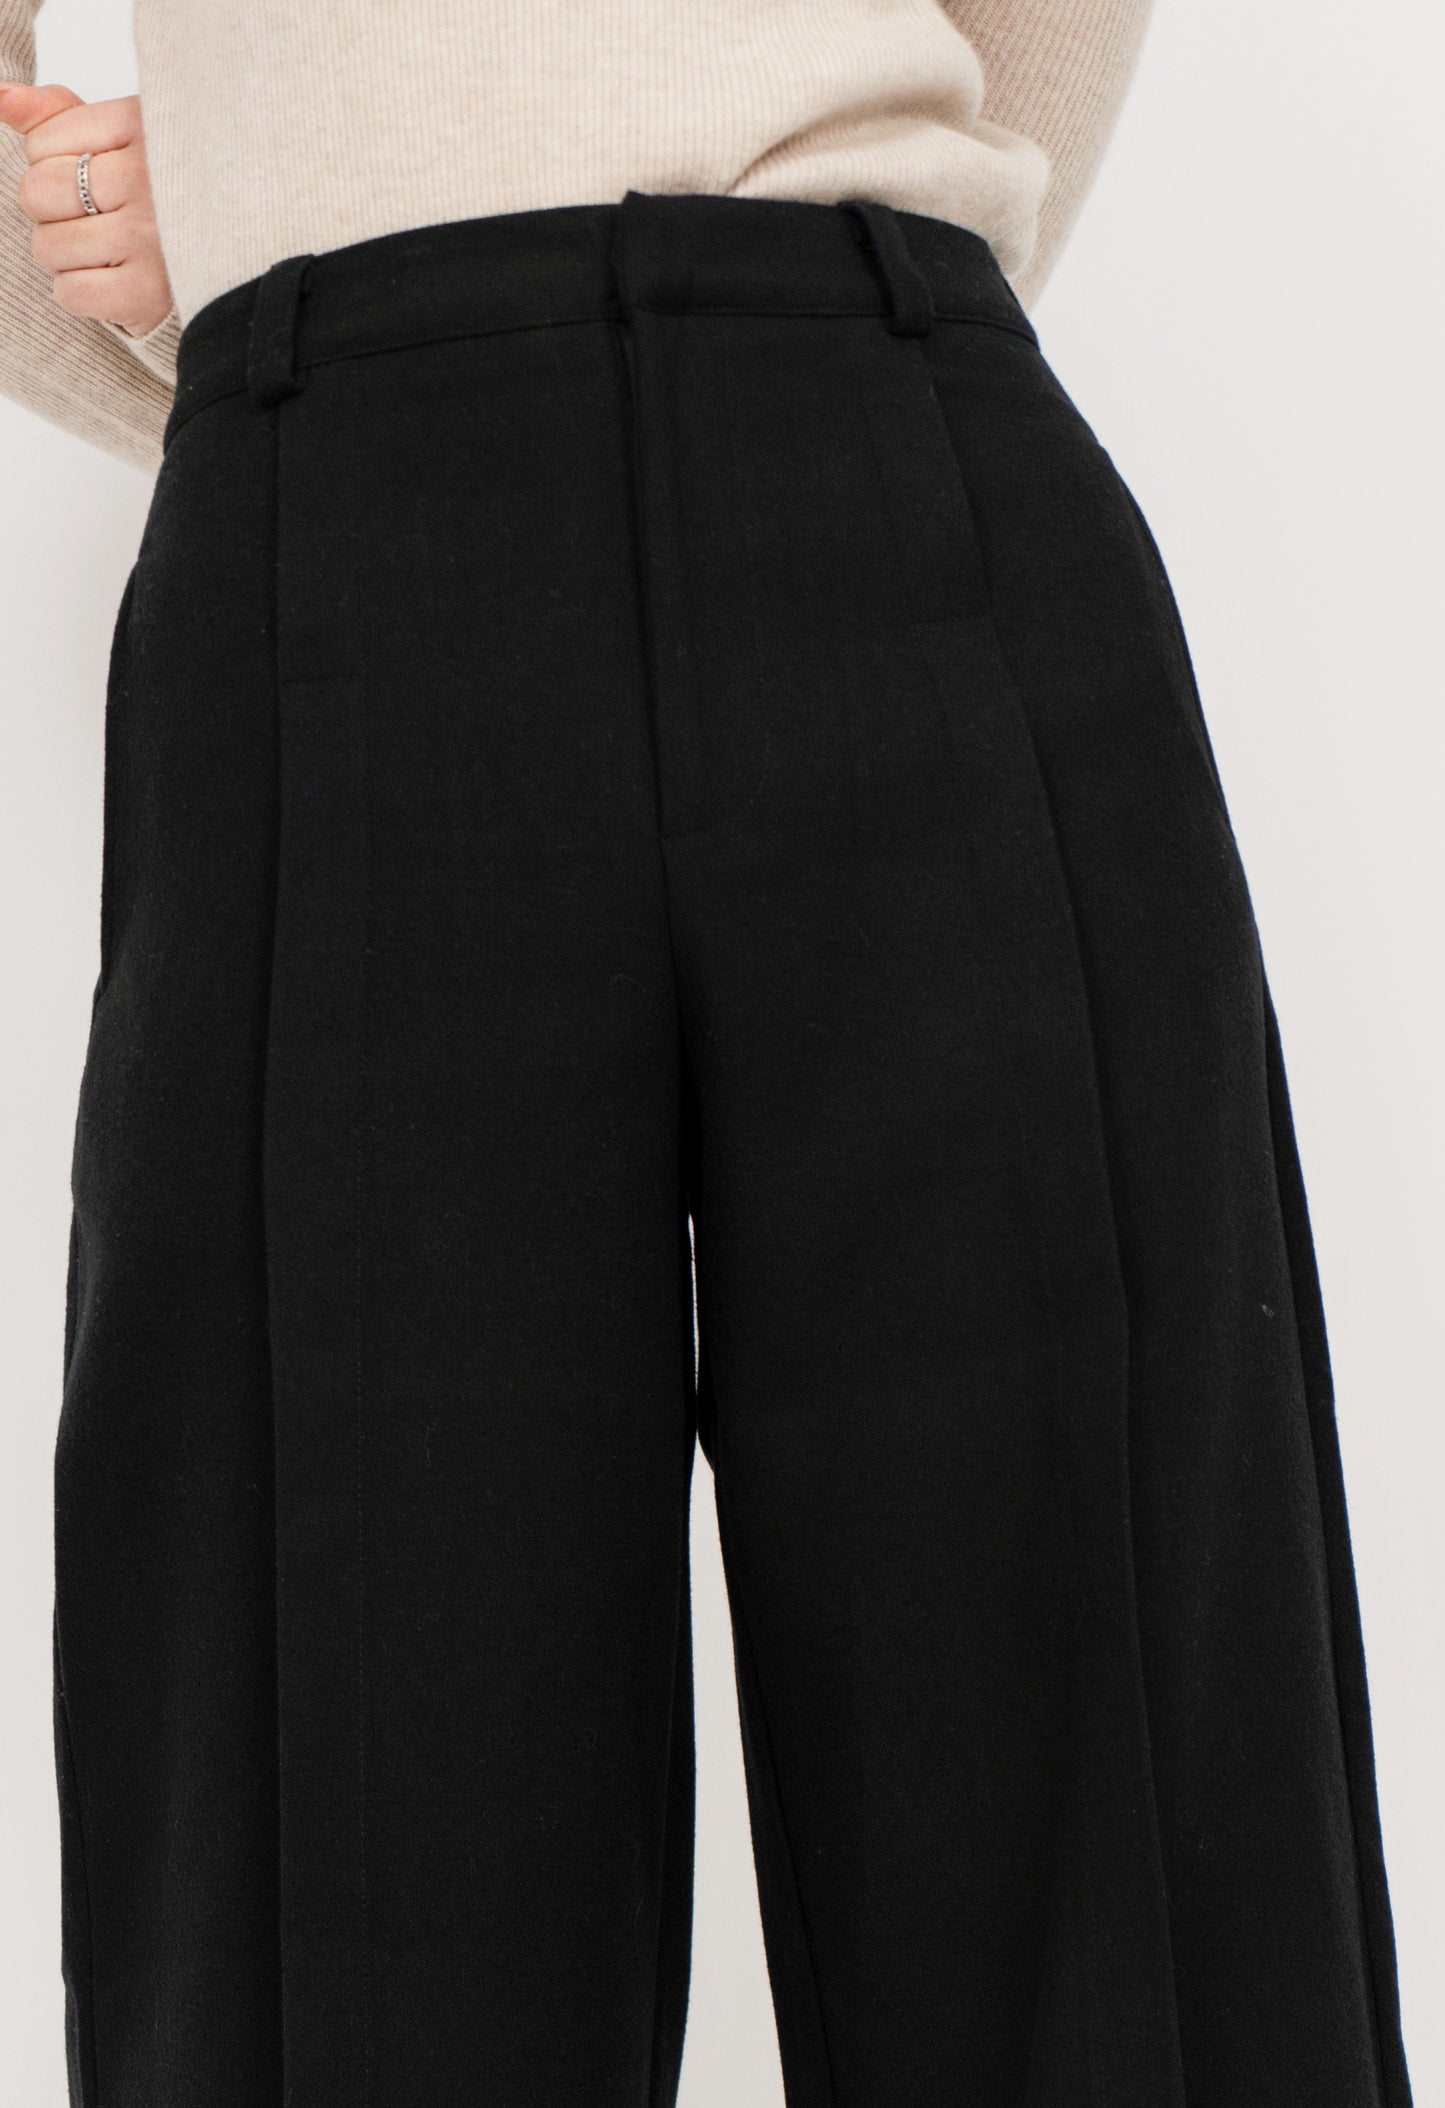 The Plush Noir Trousers